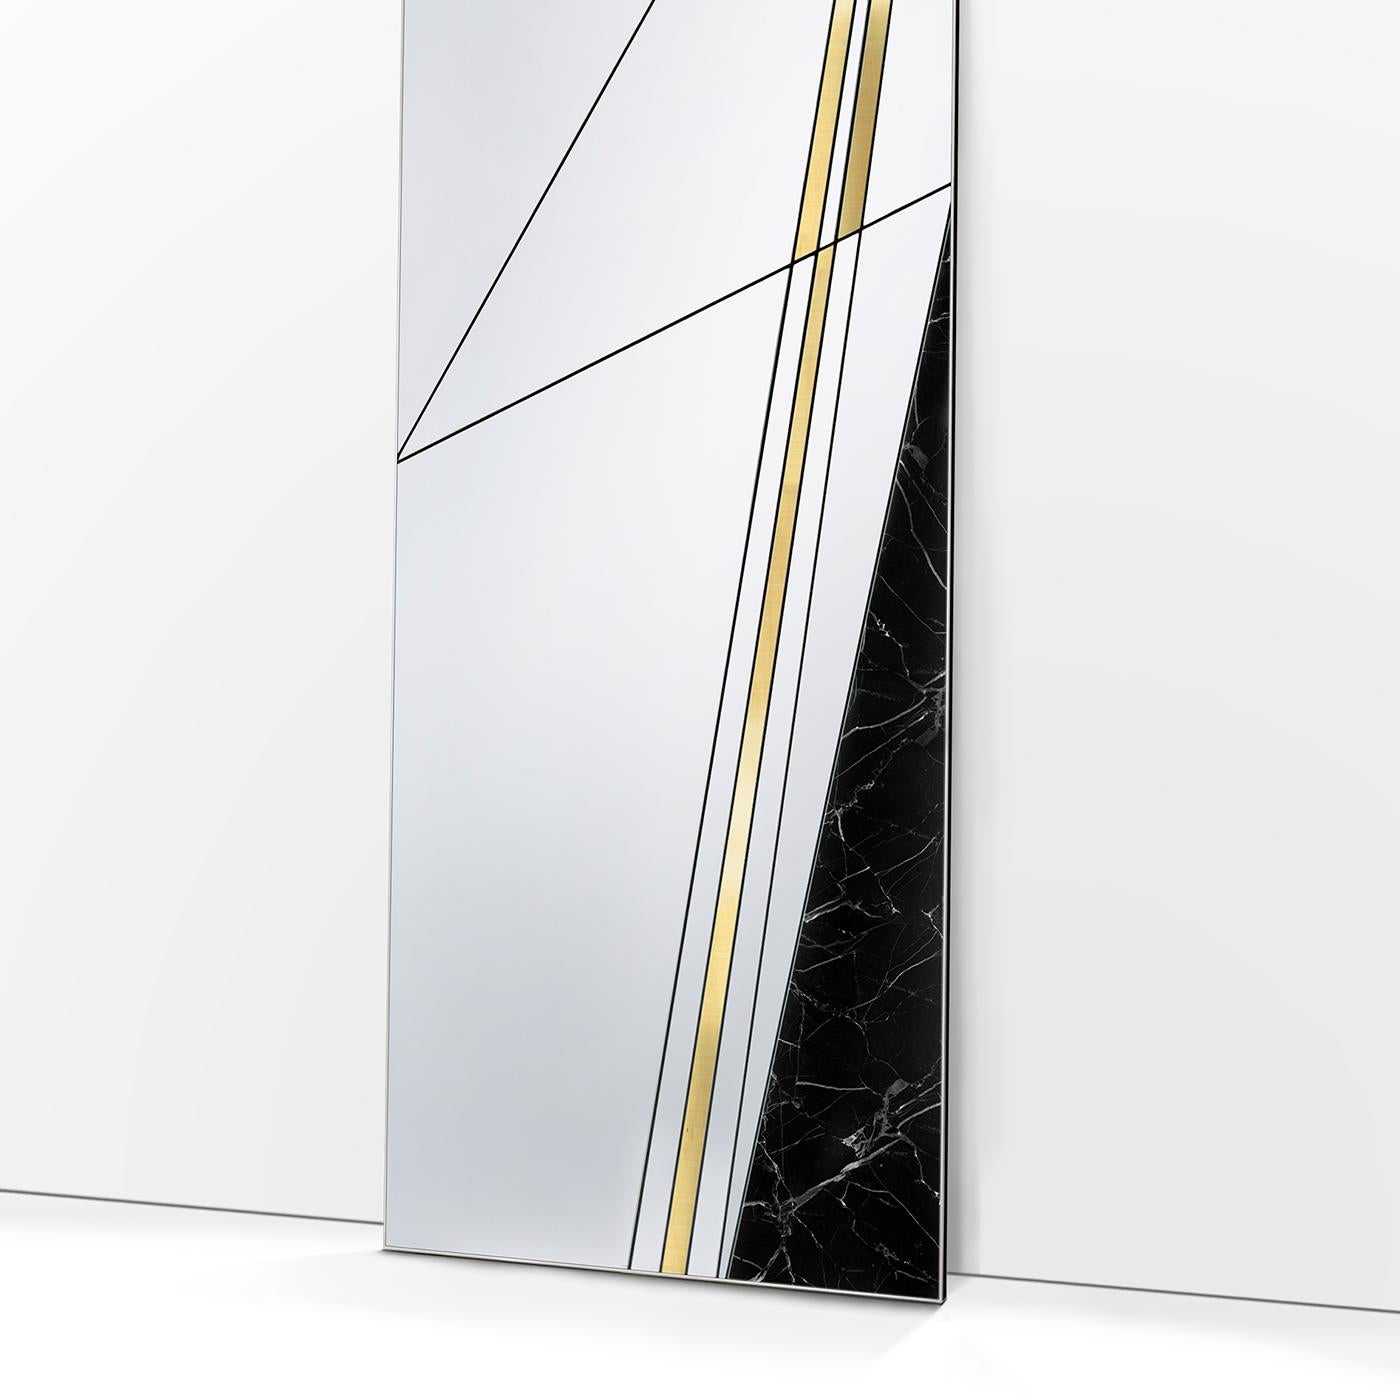 Als Teil einer Serie von Bodenspiegeln mit einem kühnen und raffinierten Design ist dieses Stück eine elegante Dekoration für einen modernen Eingangsbereich, ein Arbeitszimmer oder ein Wohnzimmer. Seine rechteckige Form, die von einem Holzsockel